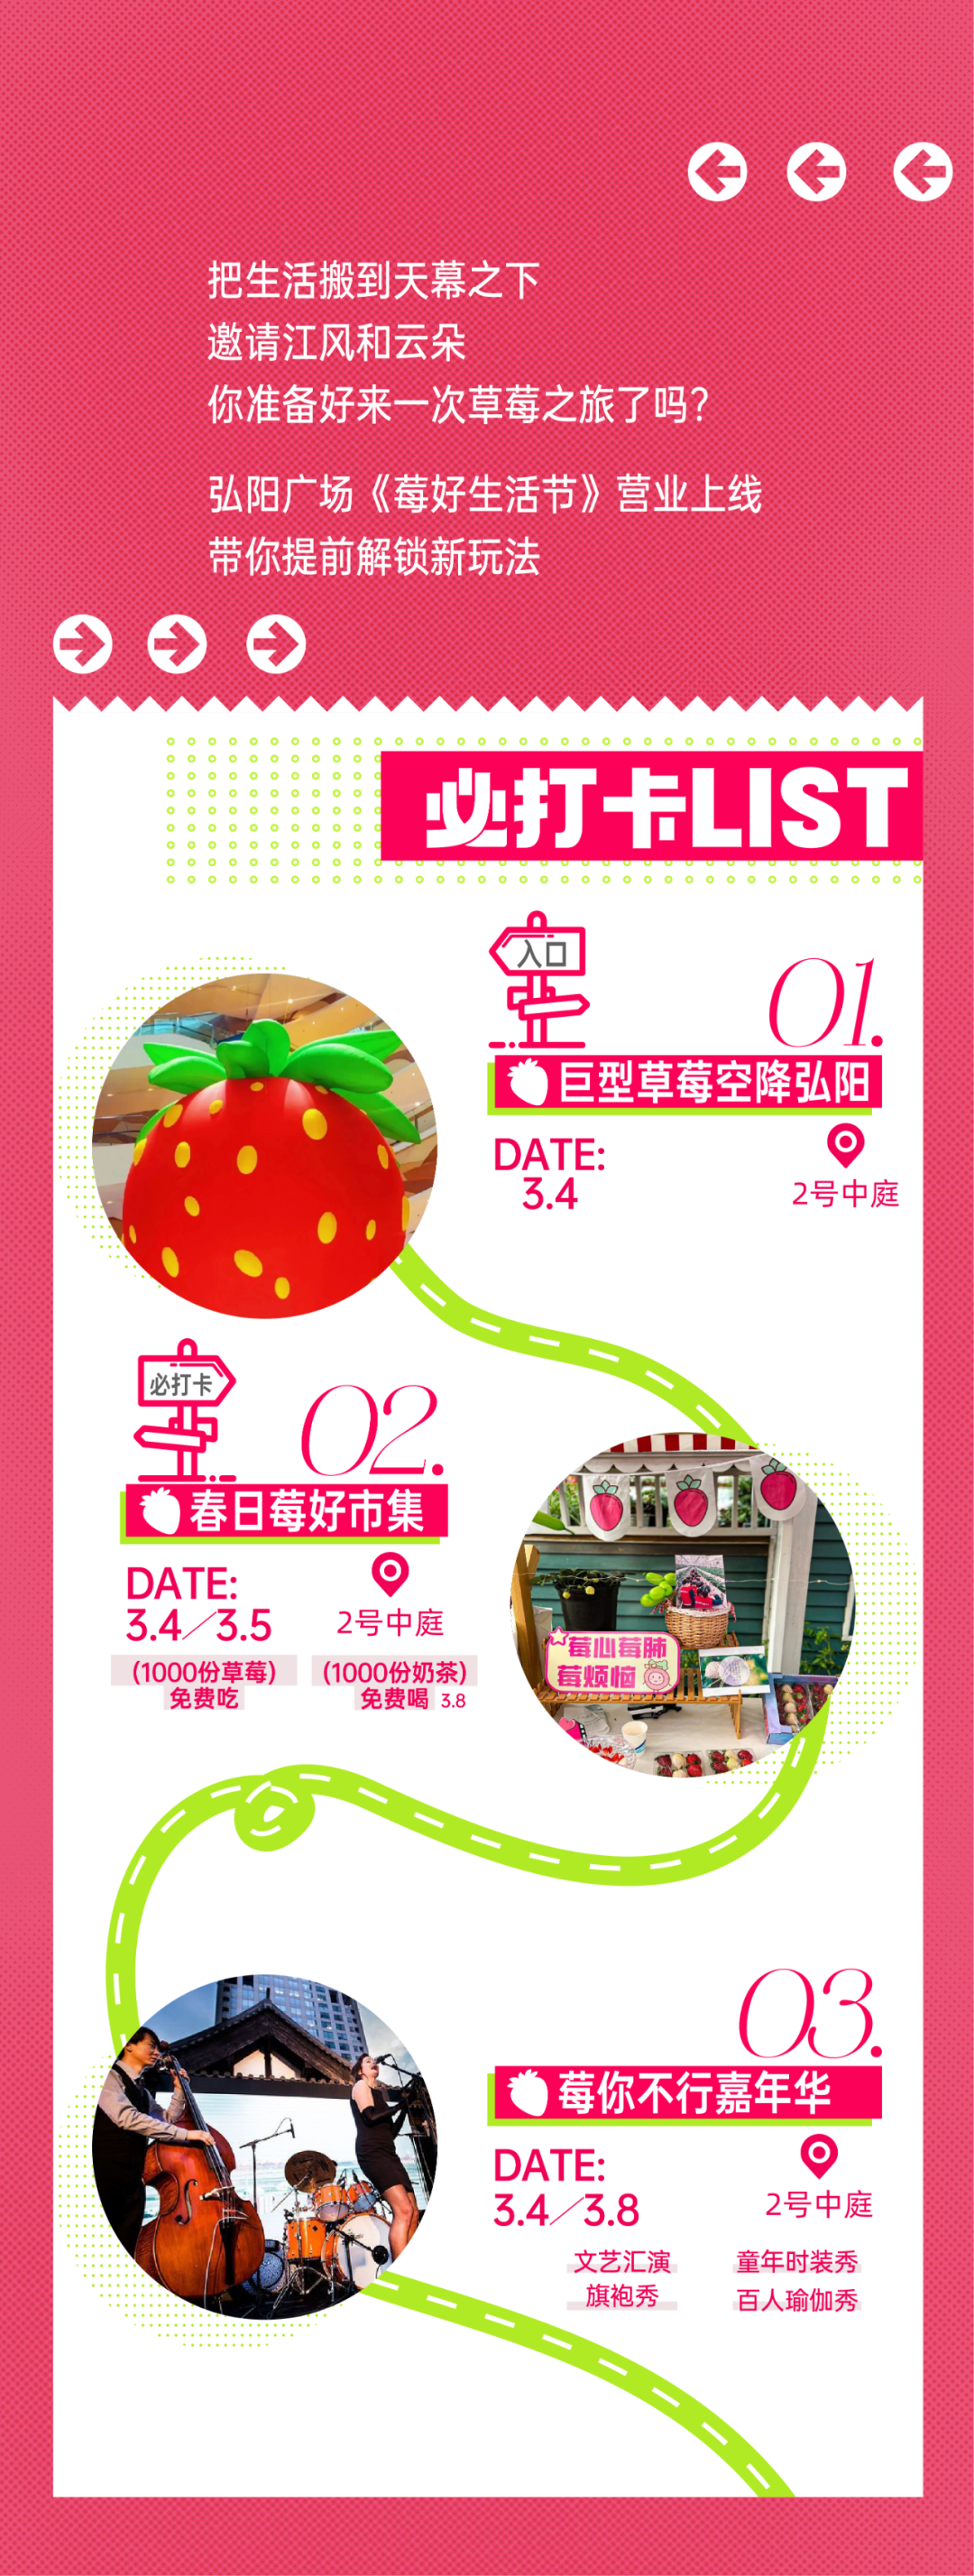 安庆弘阳广场甜“莓”春日spring